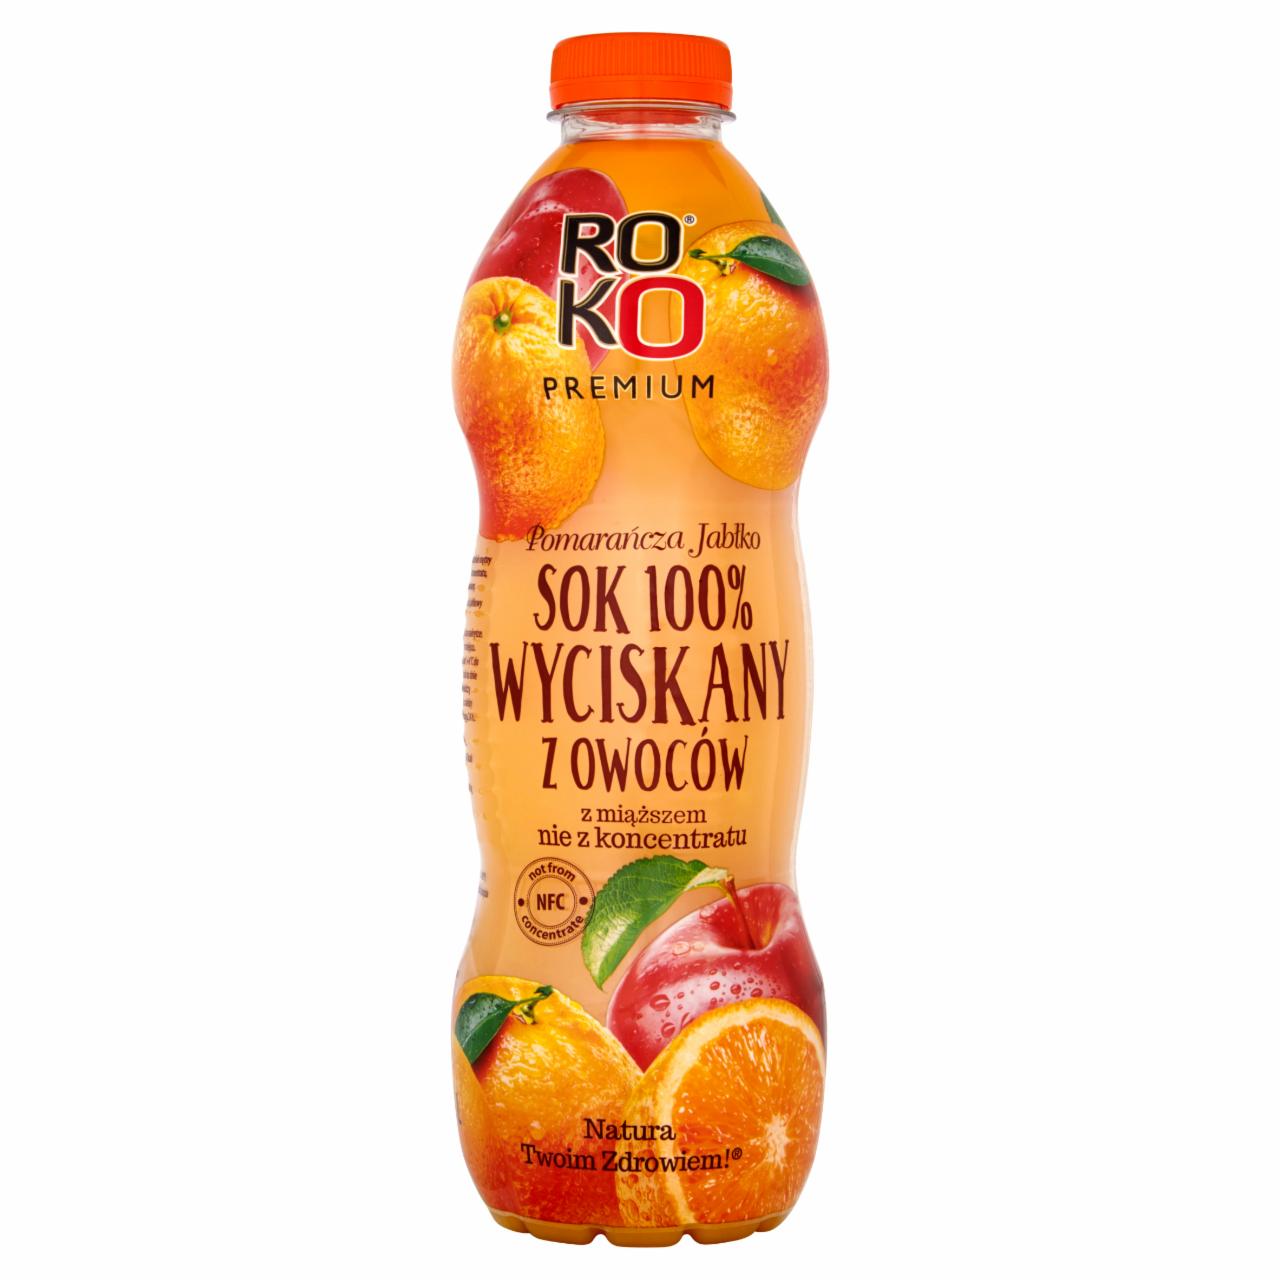 Zdjęcia - ROKO Premium Pomarańcza Jabłko Sok 100% wyciskany z owoców 1 l